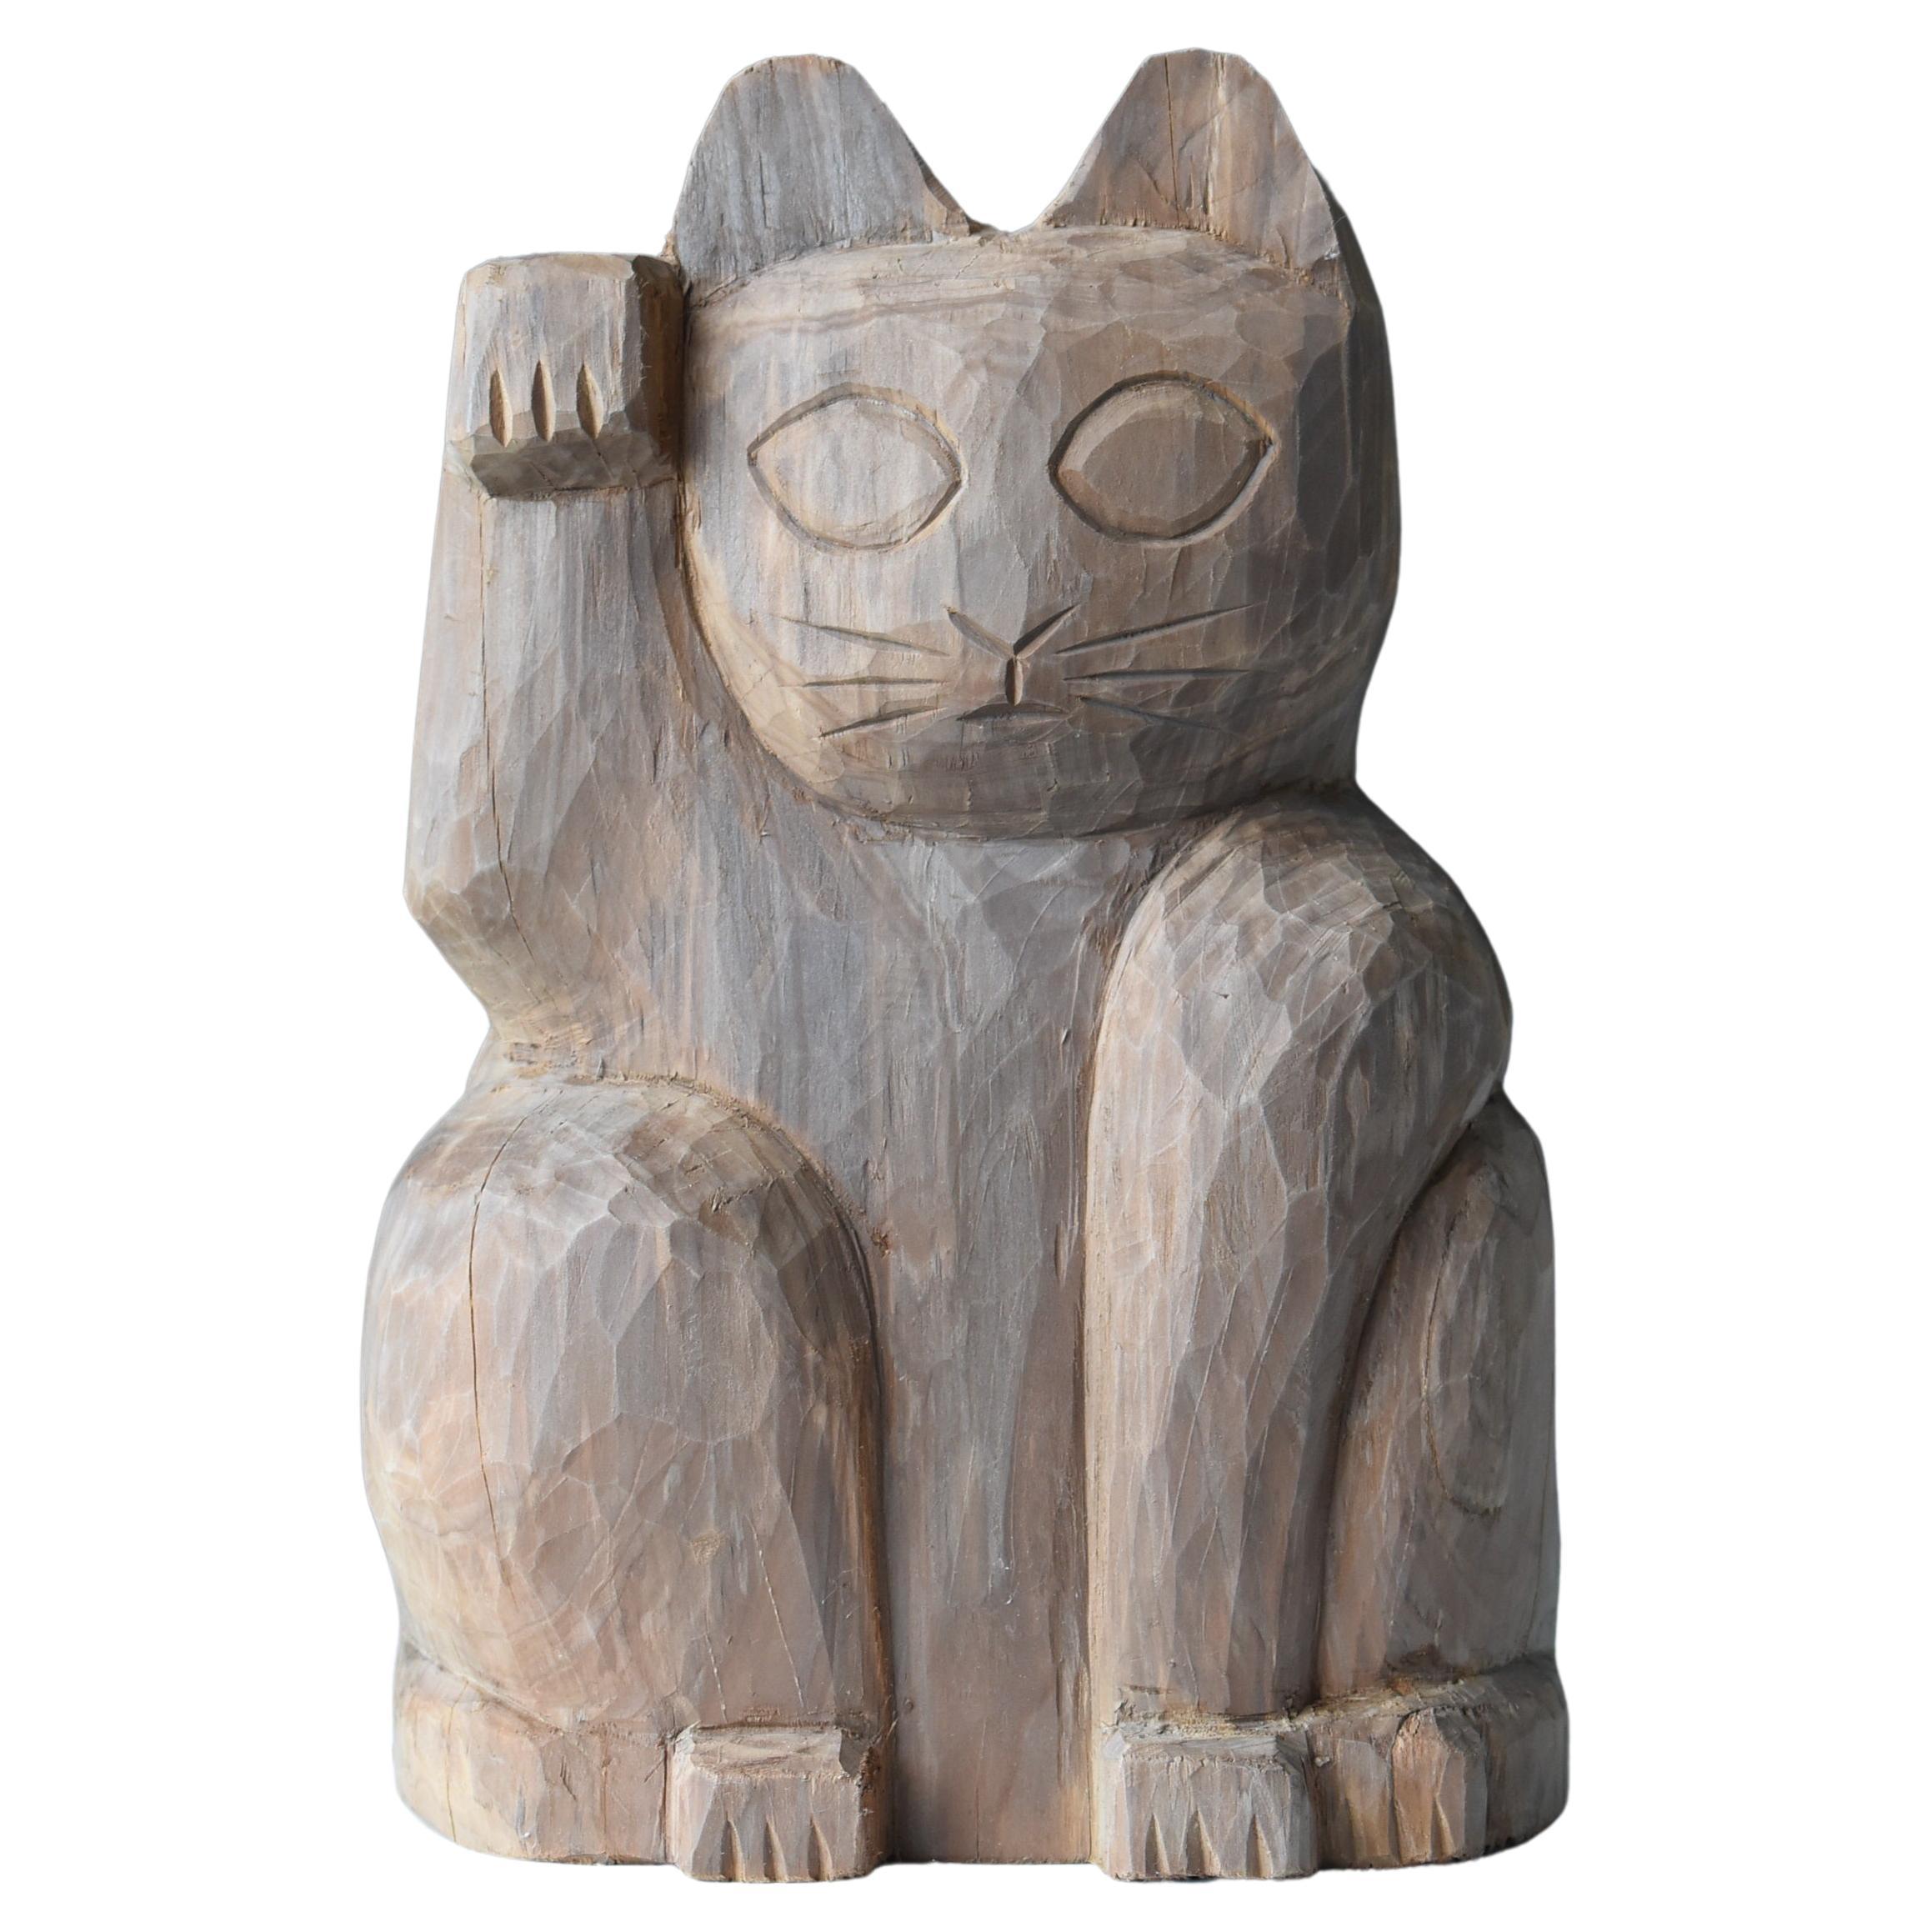 Japanese Old Wood Carving Maneki Neko 1950s-1970s/Beckoning Cat Animal Sculpture